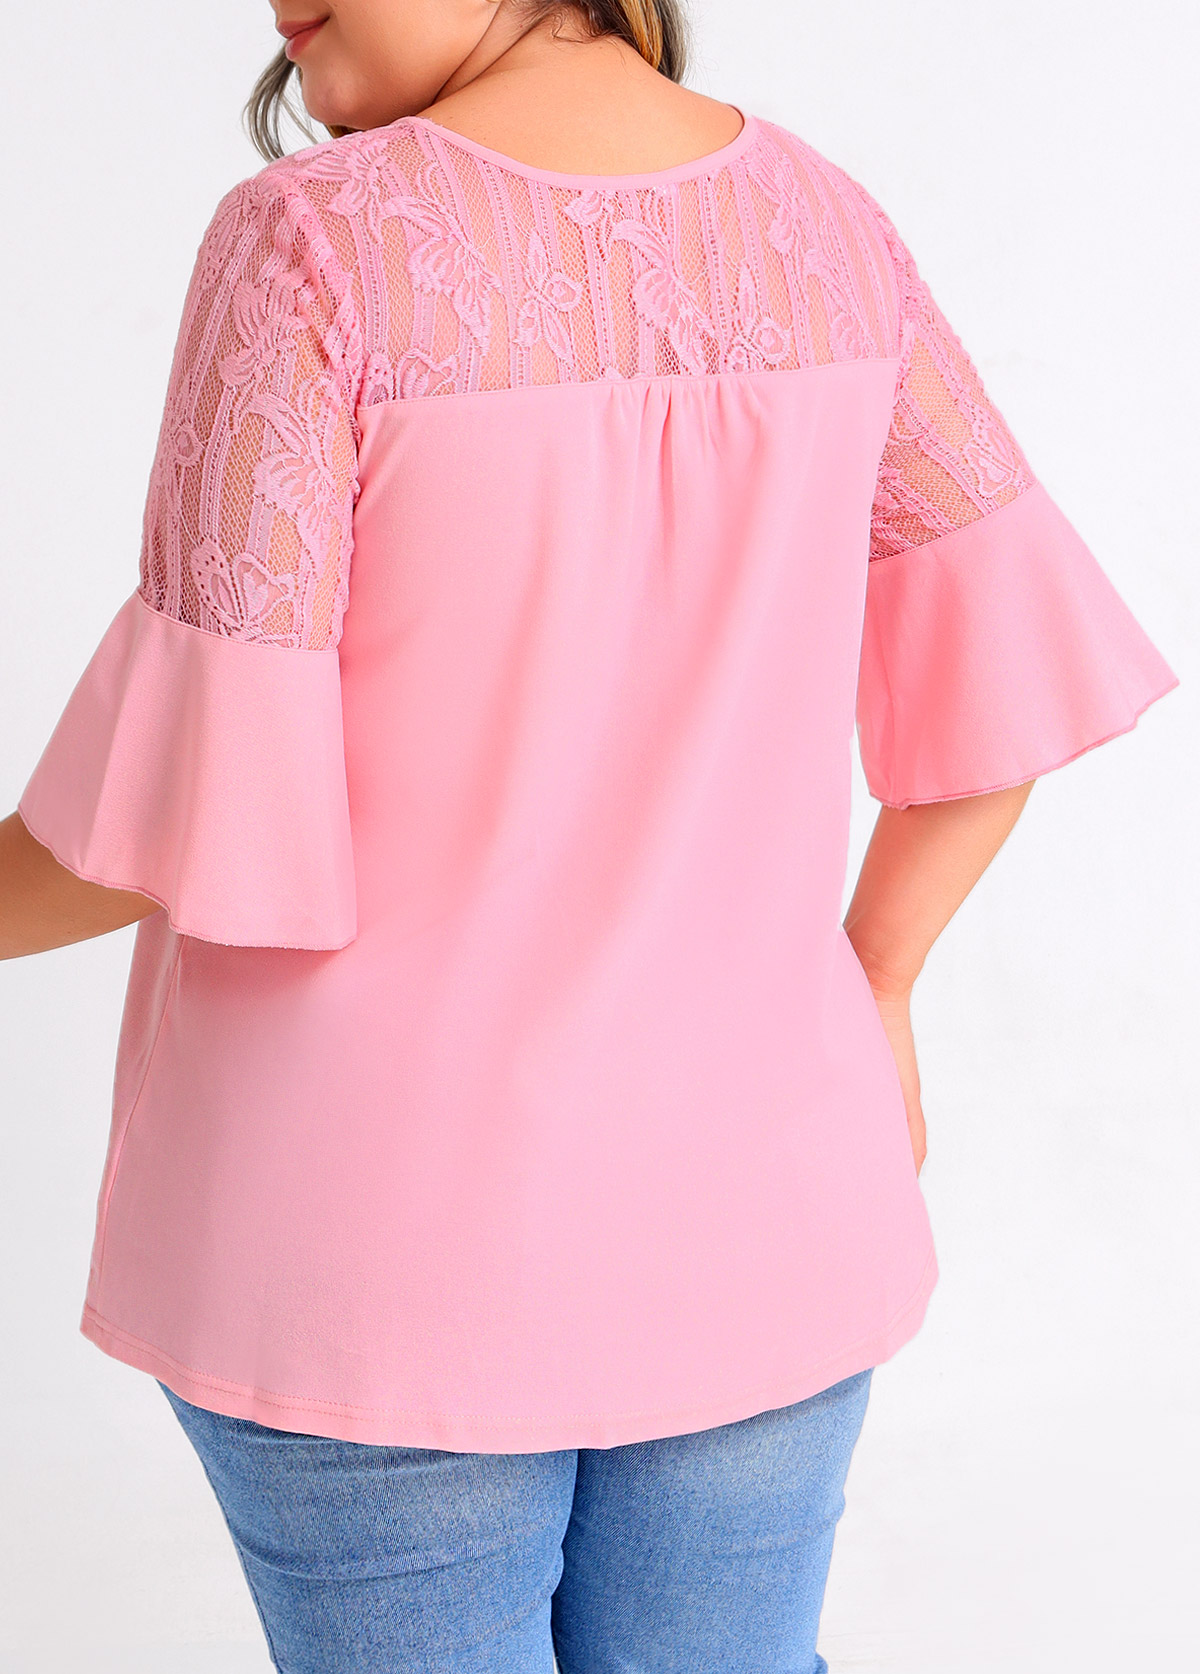 Plus Size Light Pink Lace Stitching T Shirt